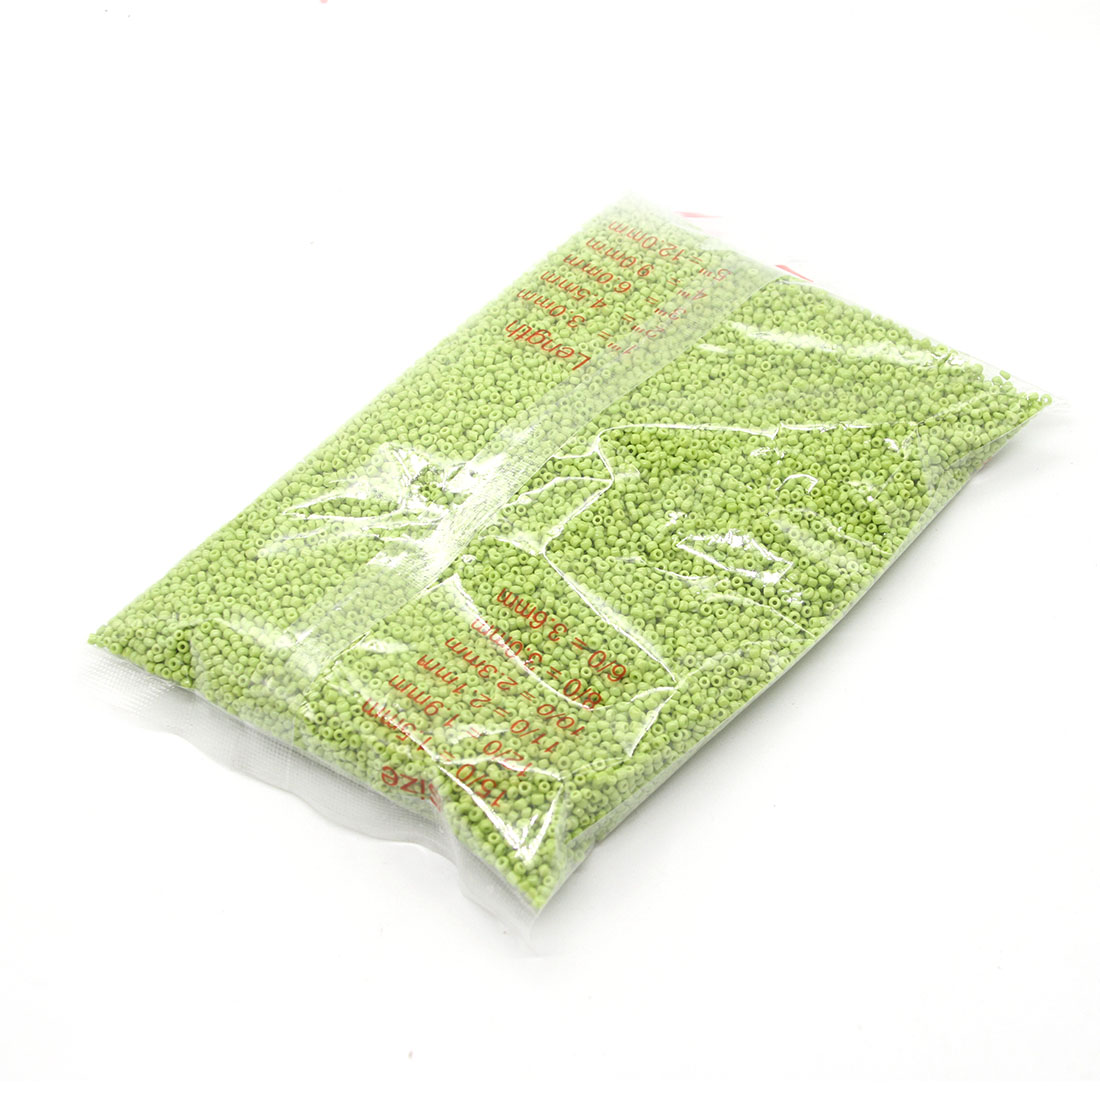 Green 3mm 10,000 packs